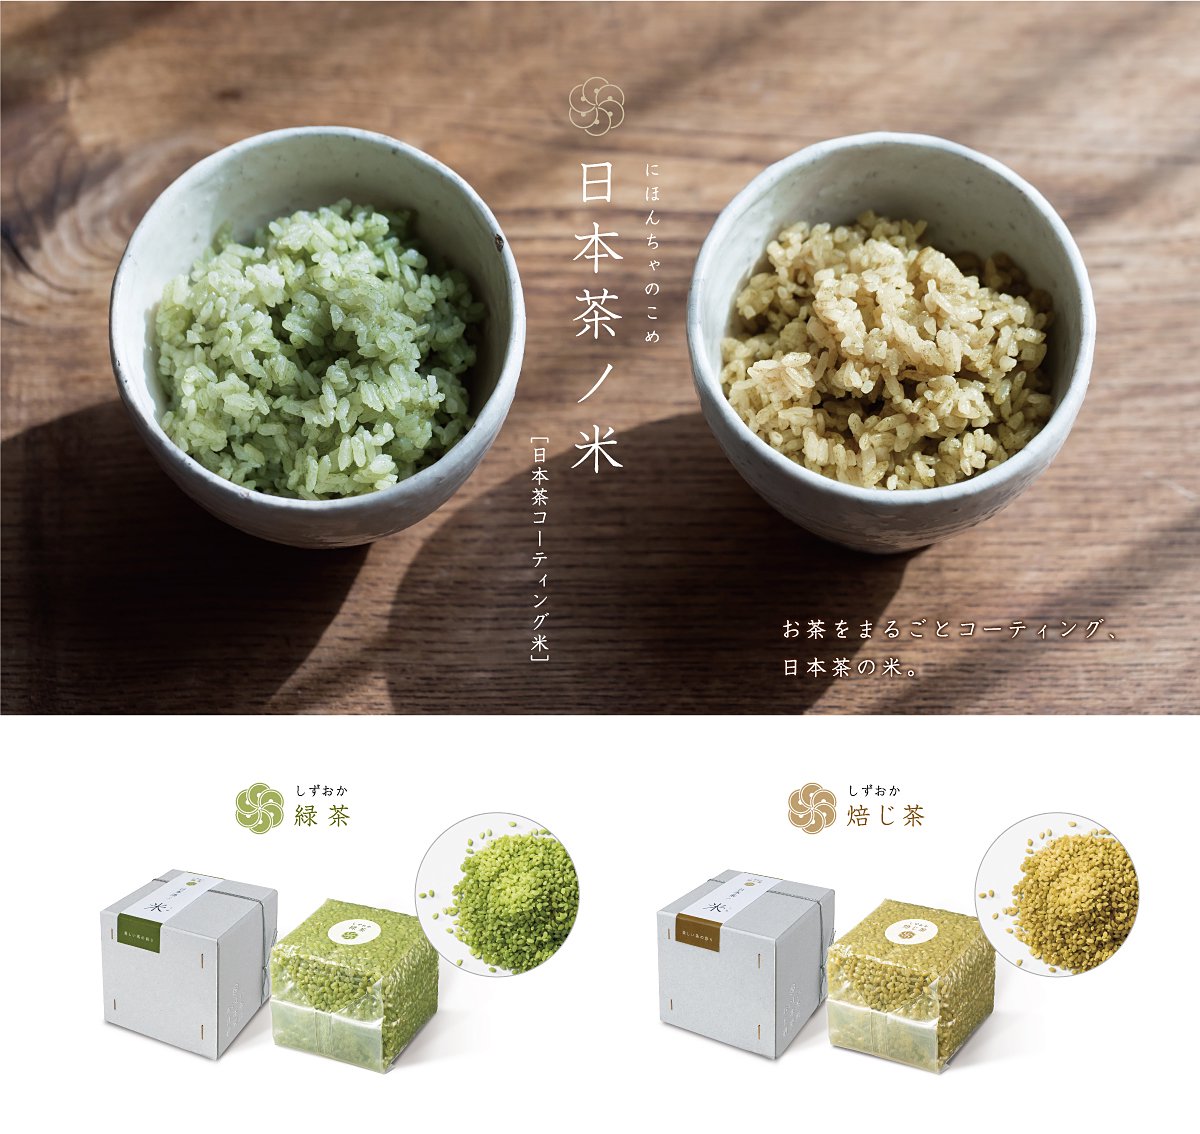 日本茶のペーストをお米一粒一粒にコーティングした緑茶の無洗米、日本茶ノ米。おいしい日本茶研究所。